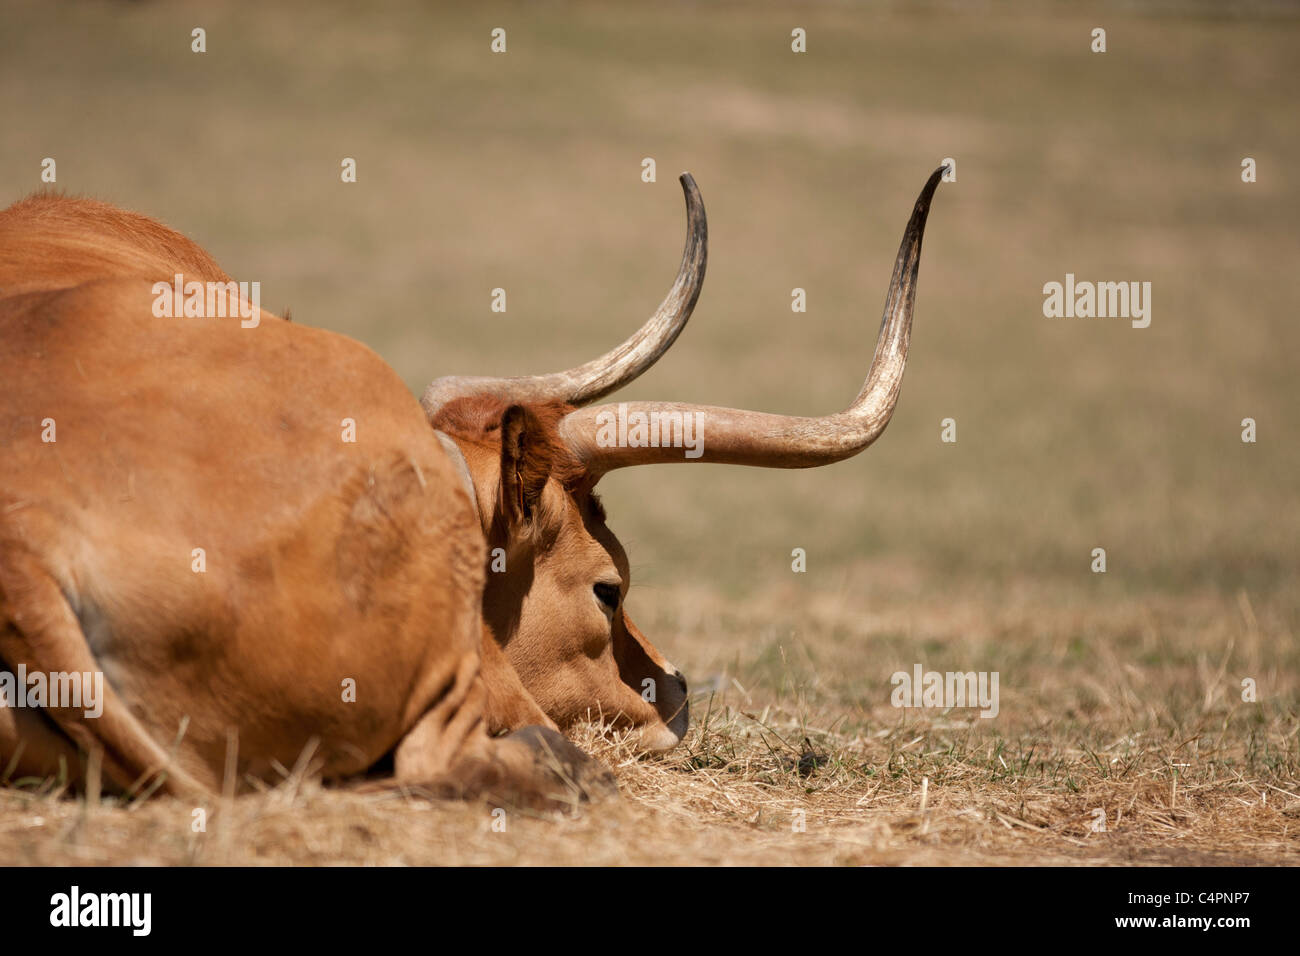 Brown cow recostados sobre el pasto seco. Esta imagen ha sido tomada en un caluroso día de sol con una Canon 40D y un 70-200 IS USM II. Foto de stock